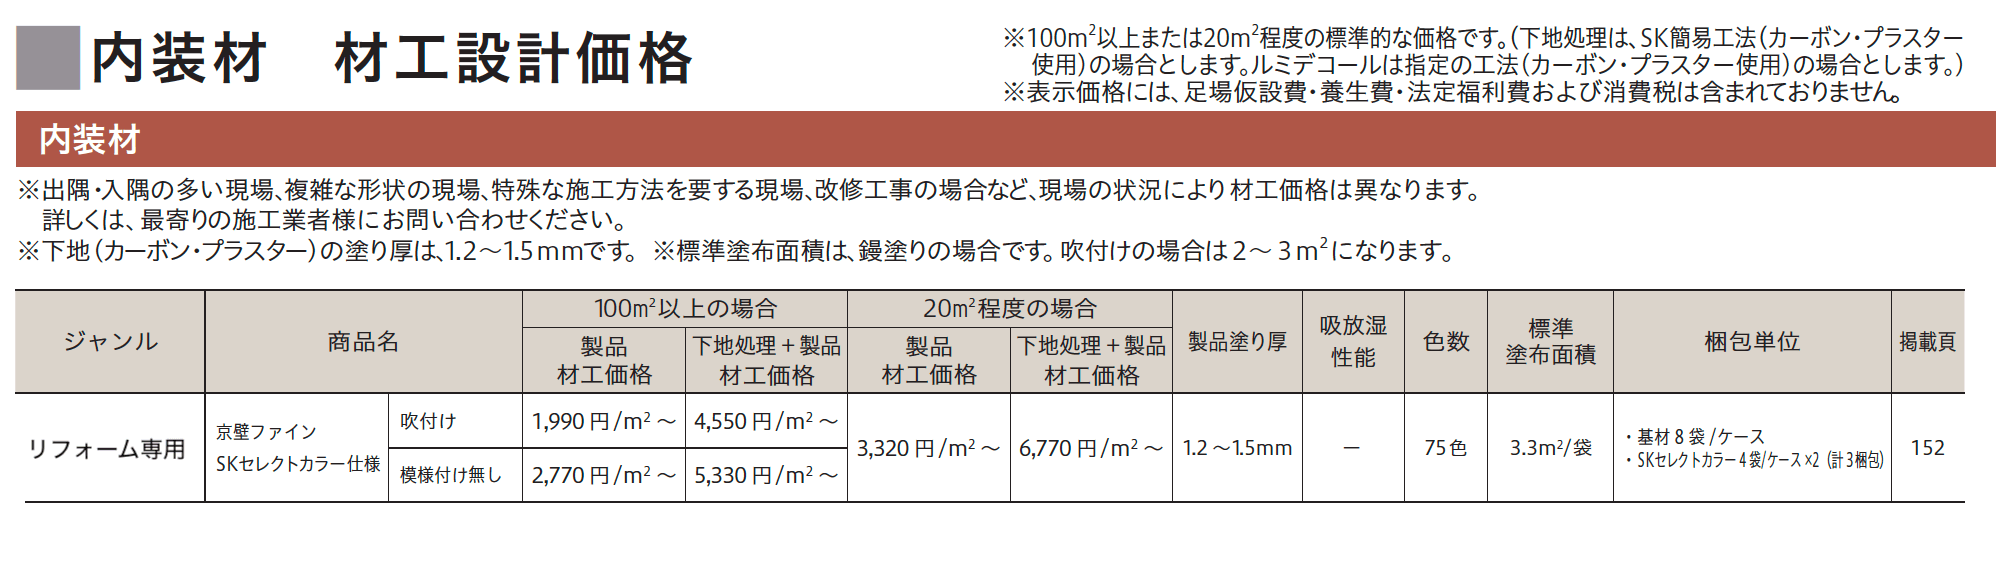 京壁ファイン SKセレクトカラー仕様【2023年版】_価格_1